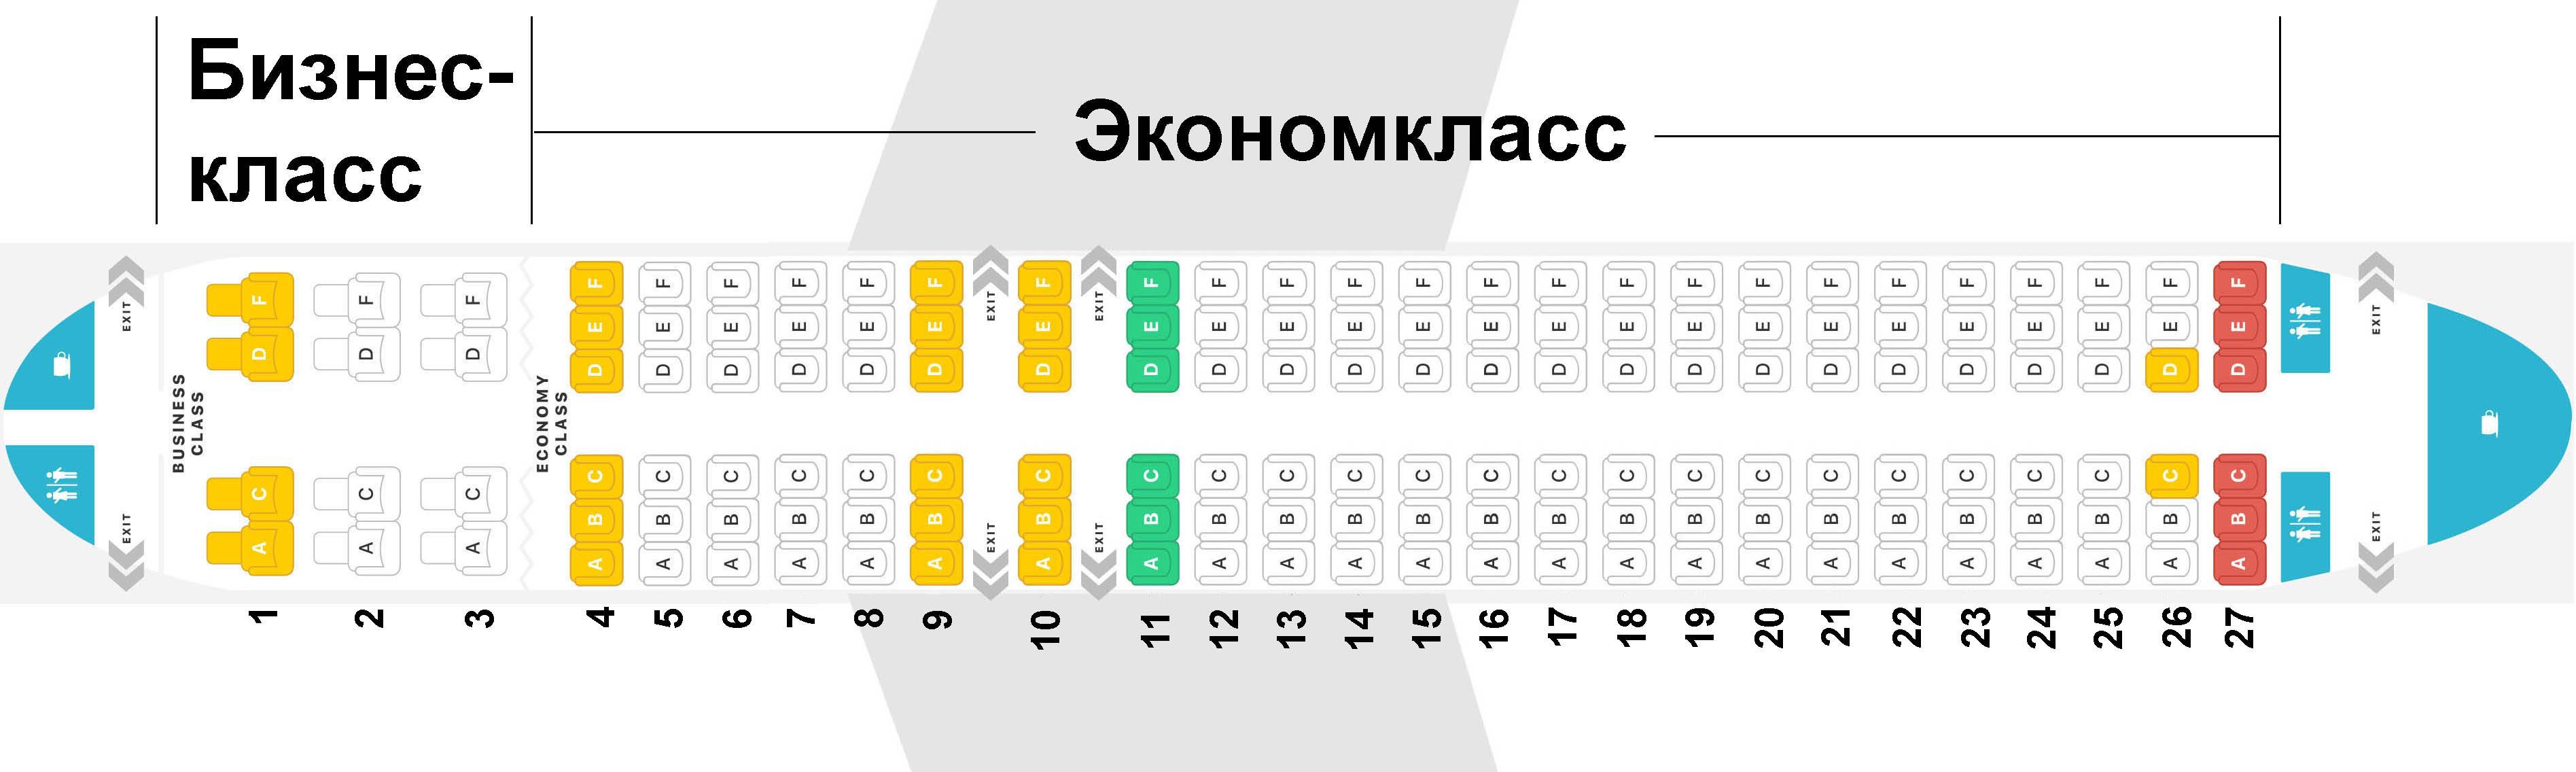 Схема салона airbus a320neo s7 airlines